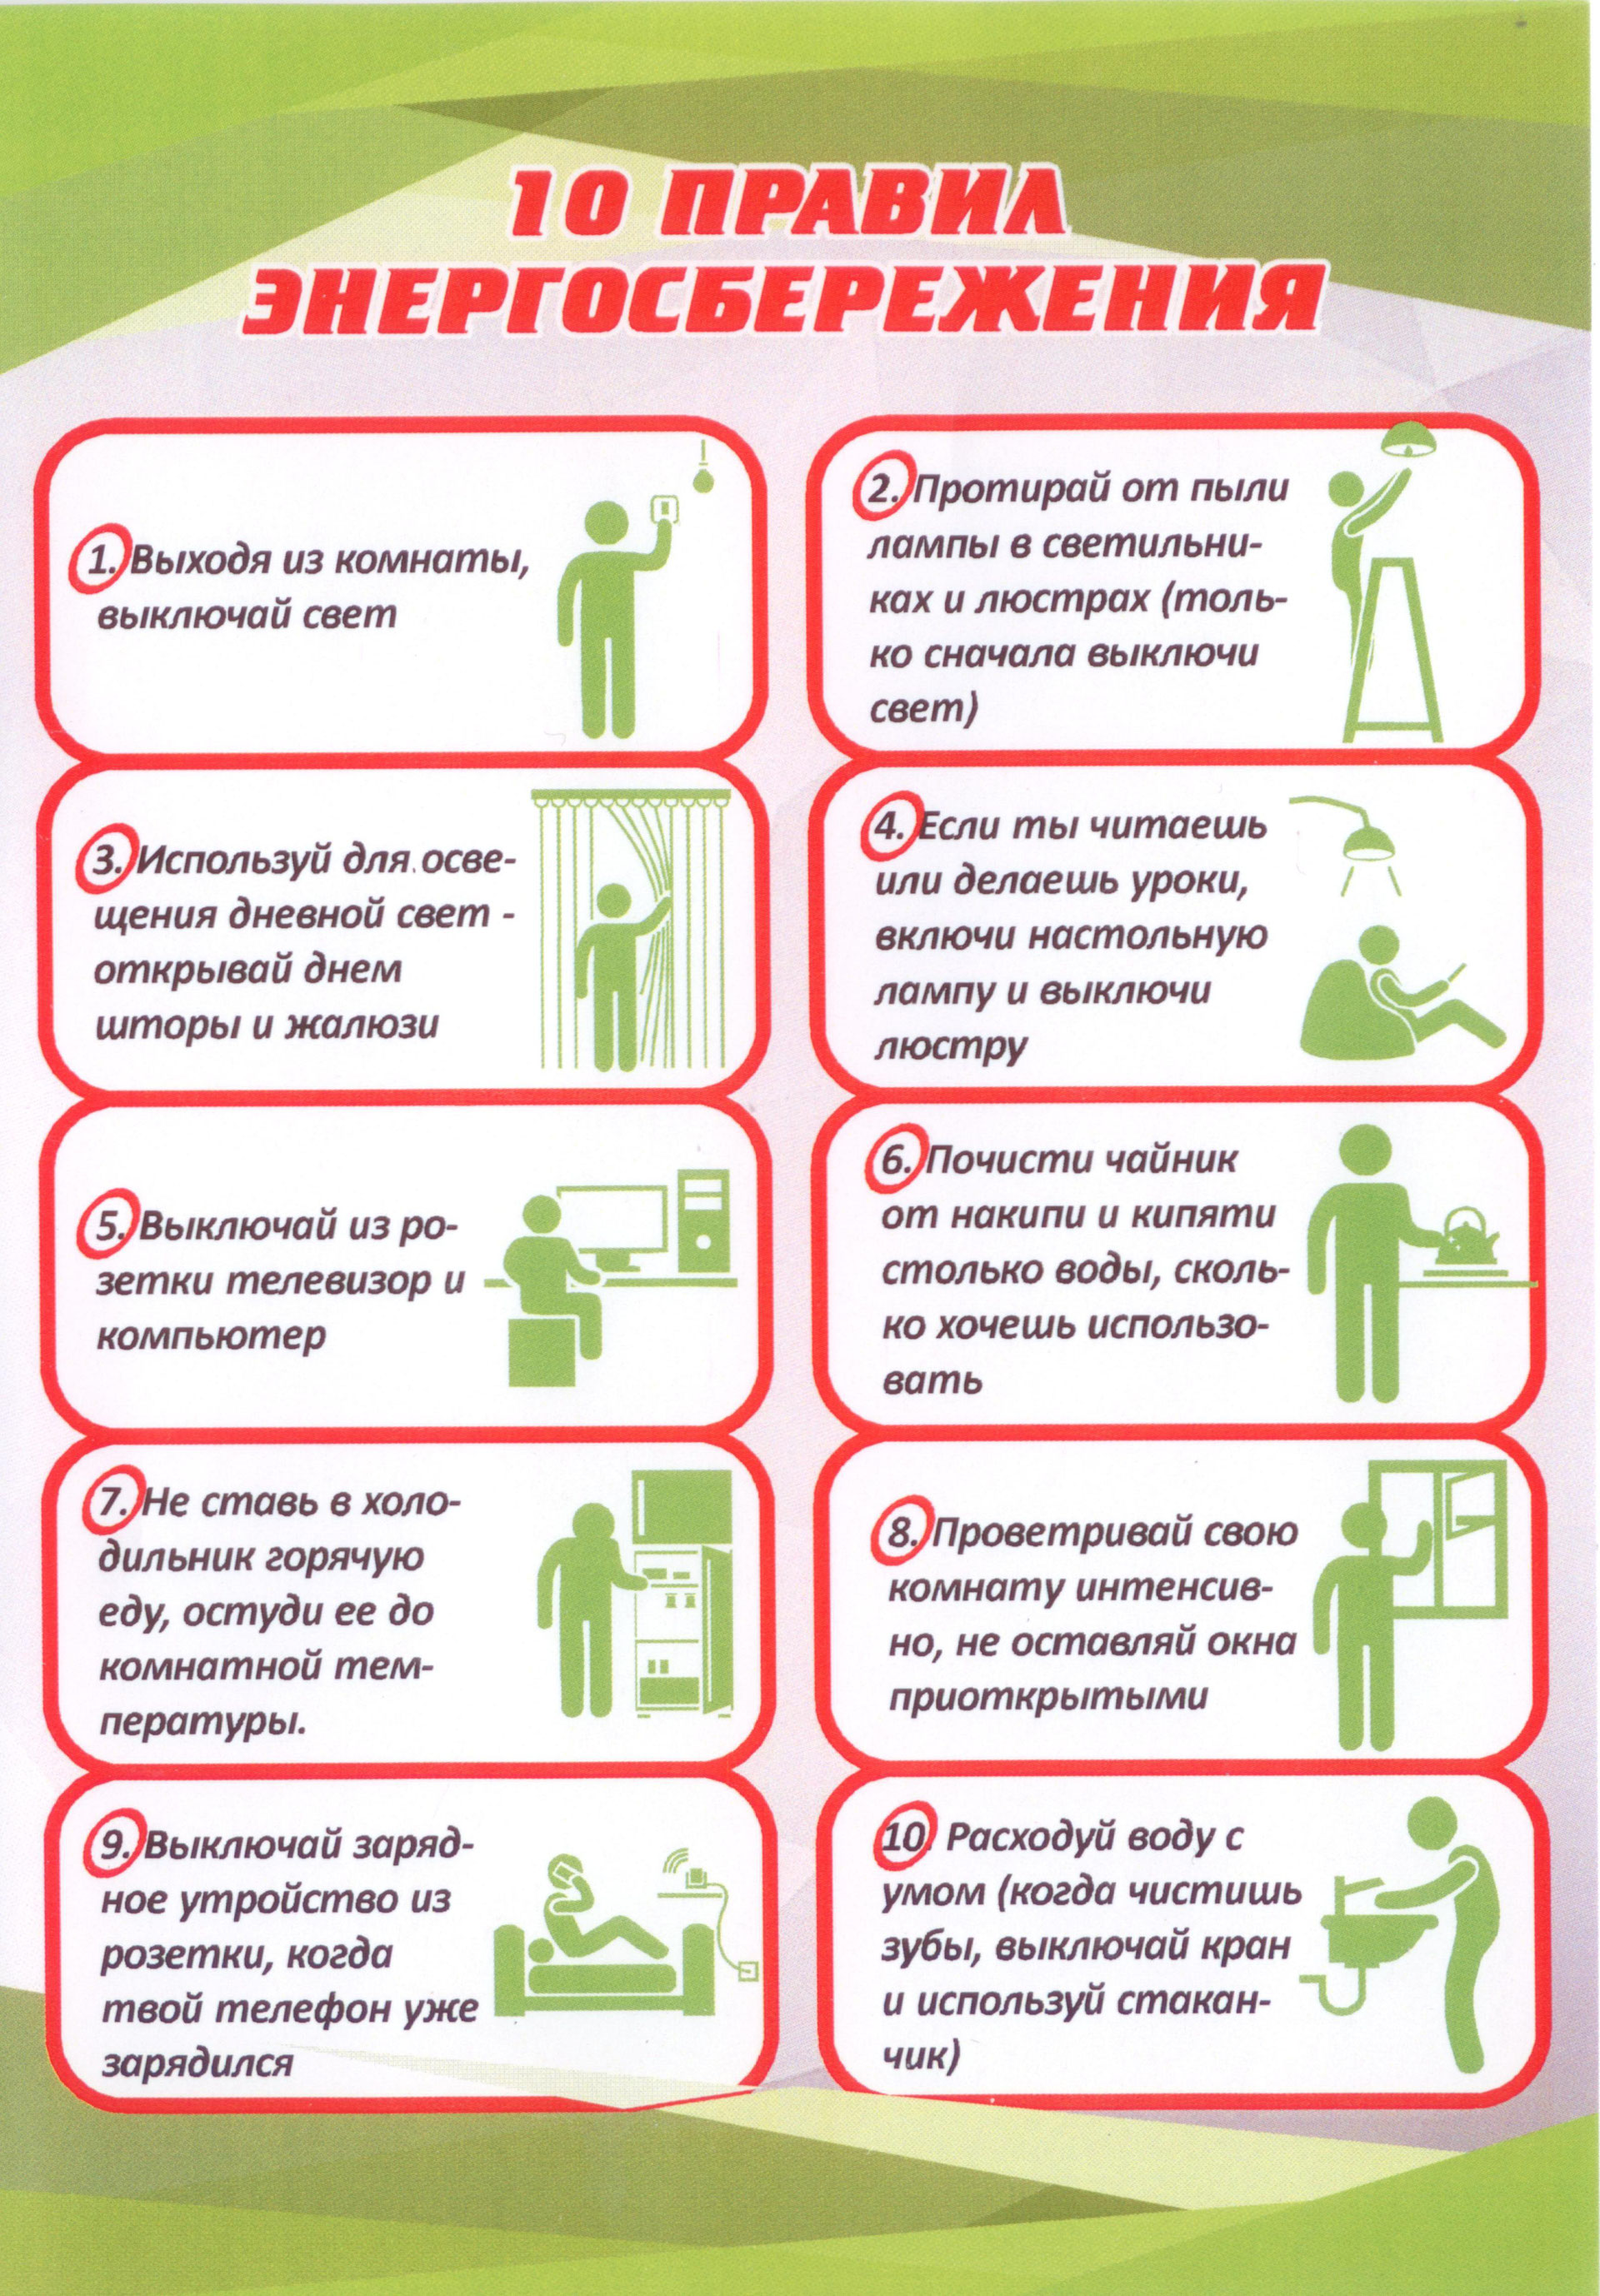 10 pravil energosberezheniya